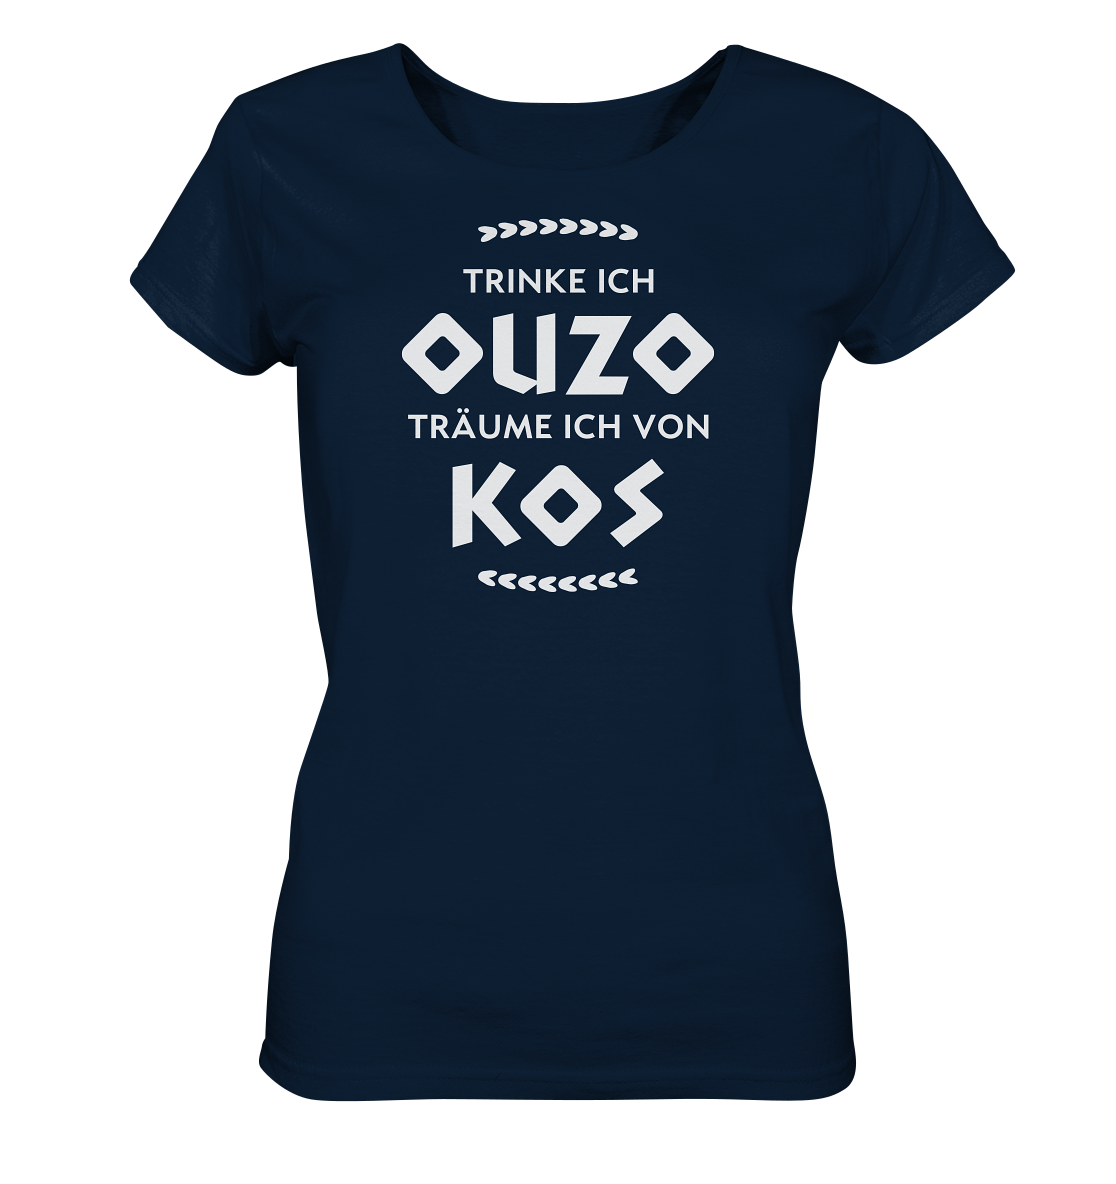 Trinke ich Ouzo träume ich von Kos - Ladies Organic Shirt